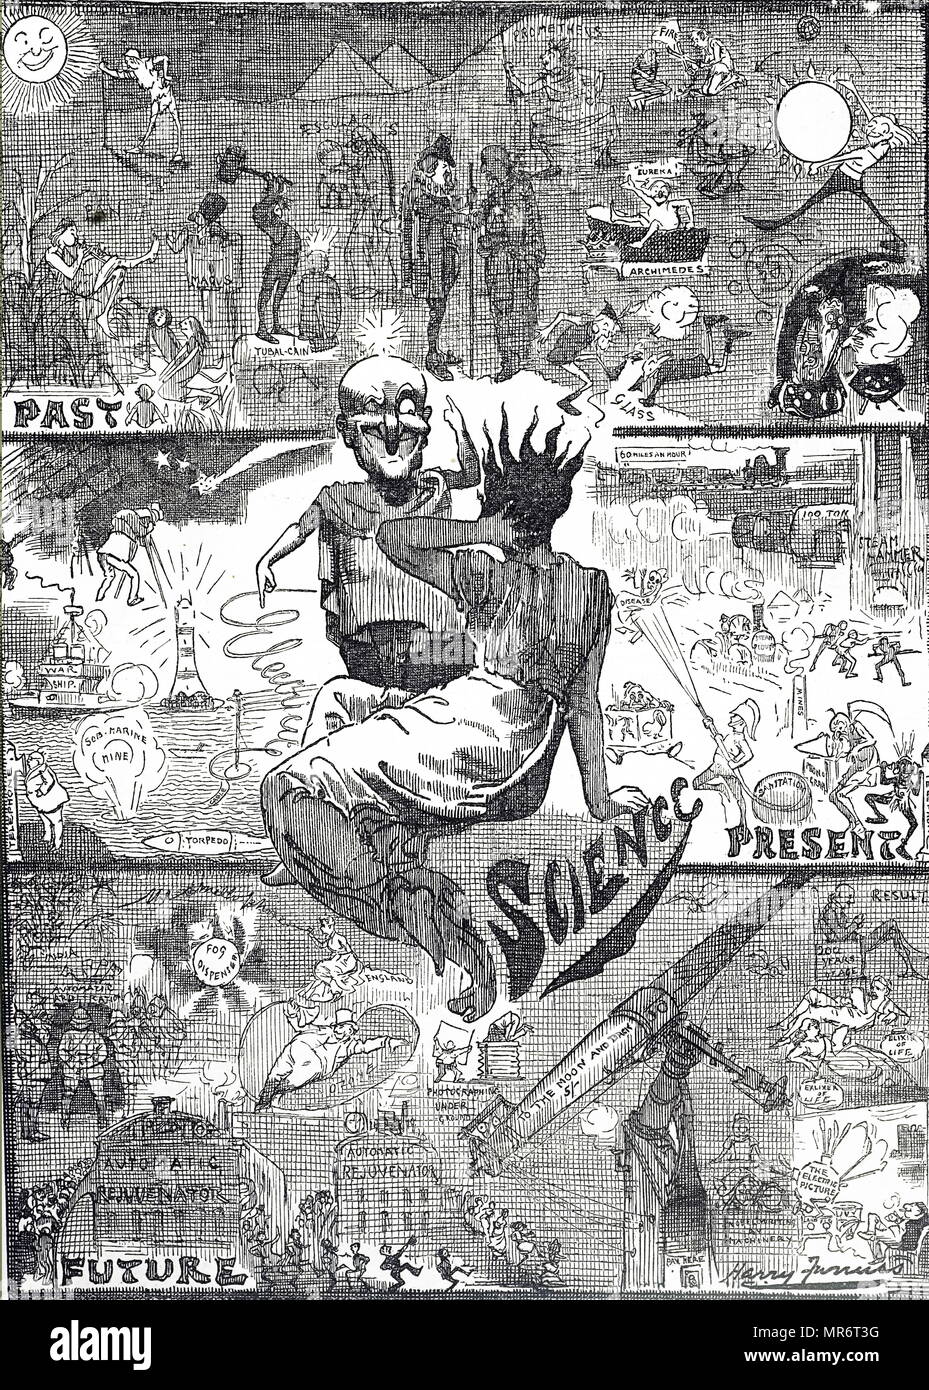 Cartoon mit der Darstellung der Vergangenheit, Gegenwart und Zukunft der Wissenschaft. Illustriert von Harry Furniss (1854-1925) irischer Künstler und Illustrator. Vom 19. Jahrhundert Stockfoto